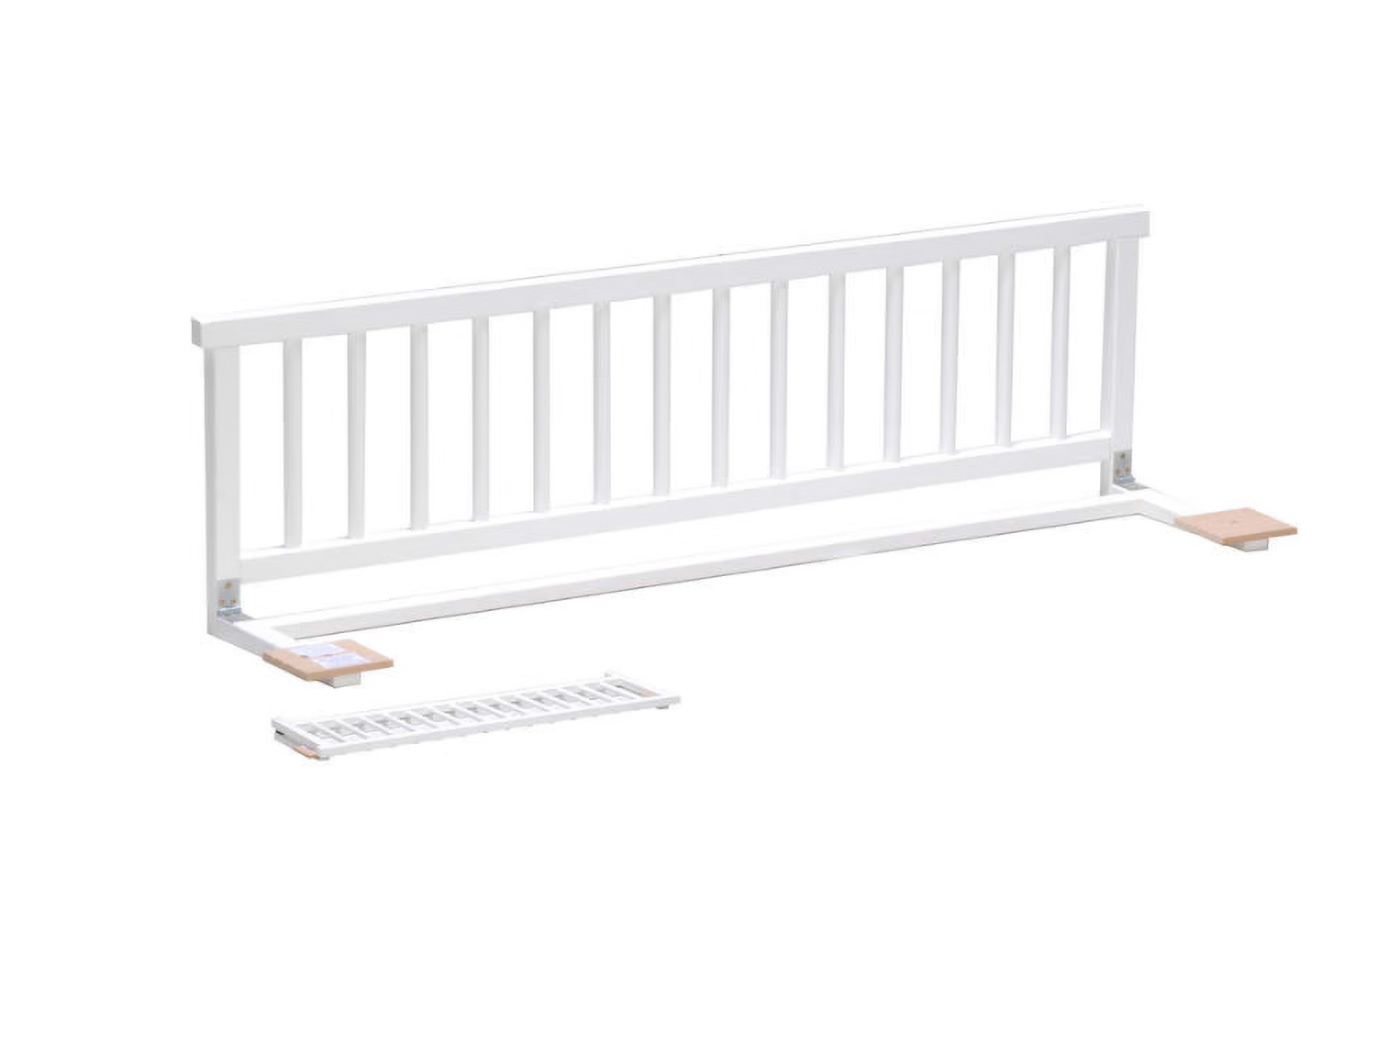 Barrière enfant escaliers - Easy Stay Les Gets, location linge et matériel  bébé